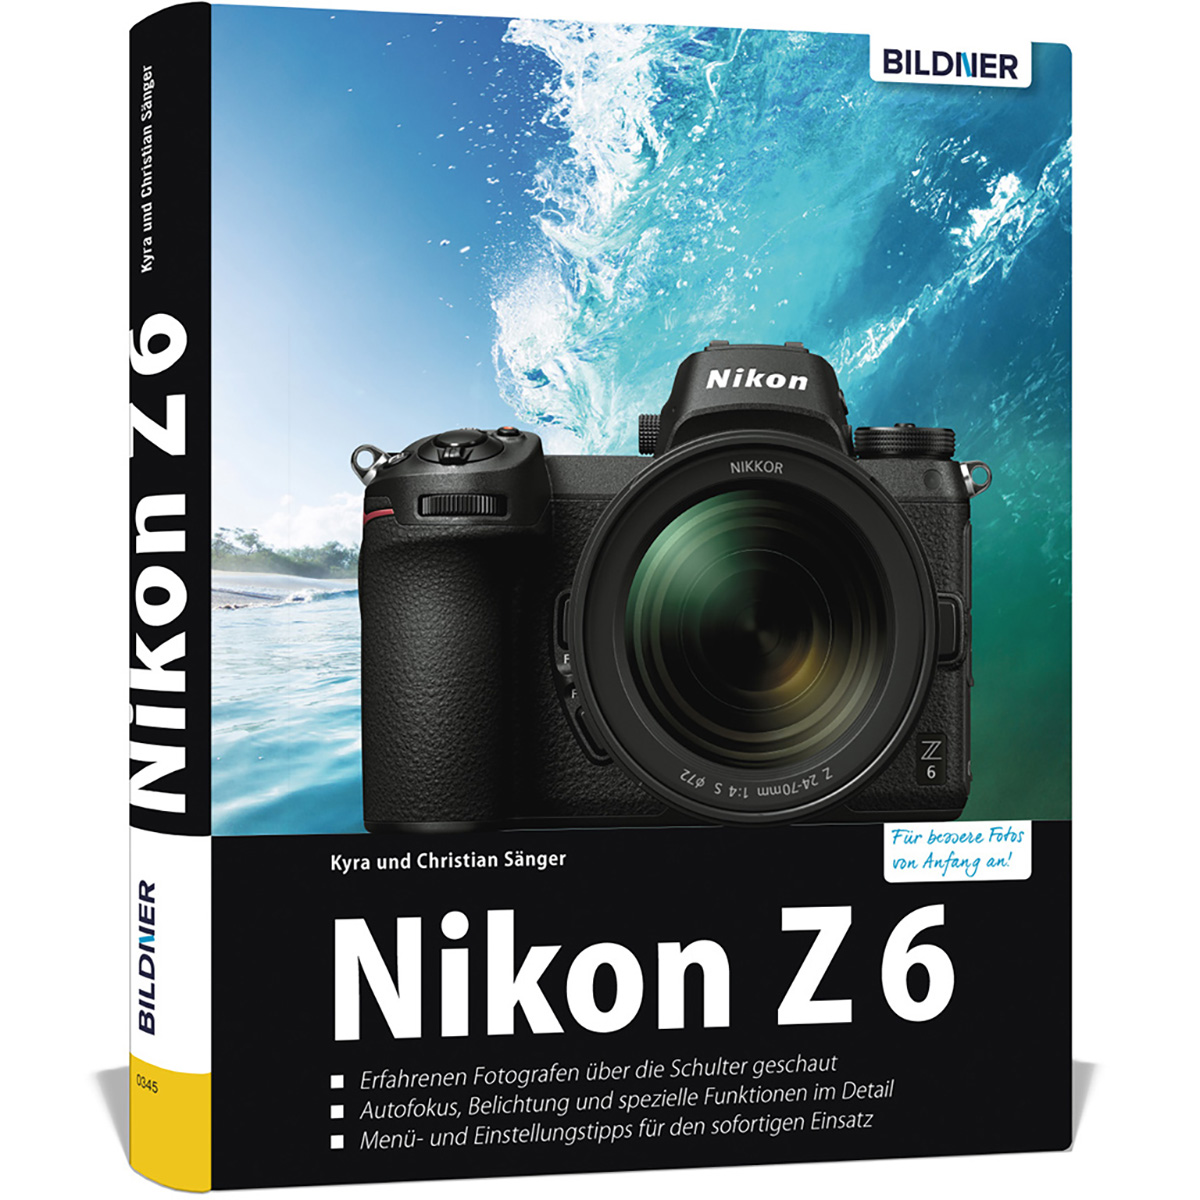 Ihrer Z6 Das Praxisbuch - Kamera Nikon zu umfangreiche